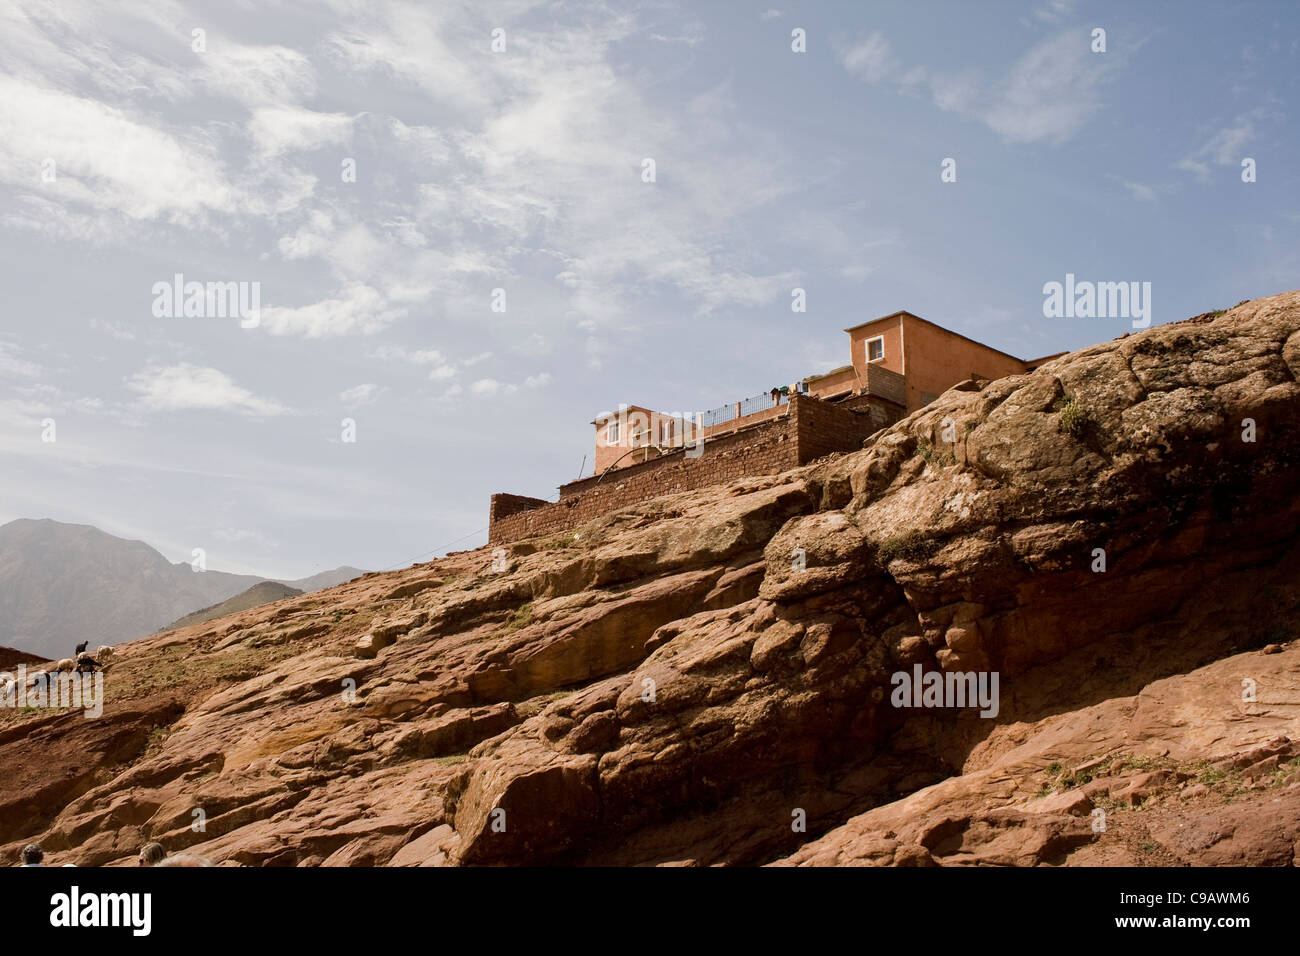 Une maison berbère dans les montagnes de l'Atlas Marrakech Maroc Afrique du Nord Banque D'Images